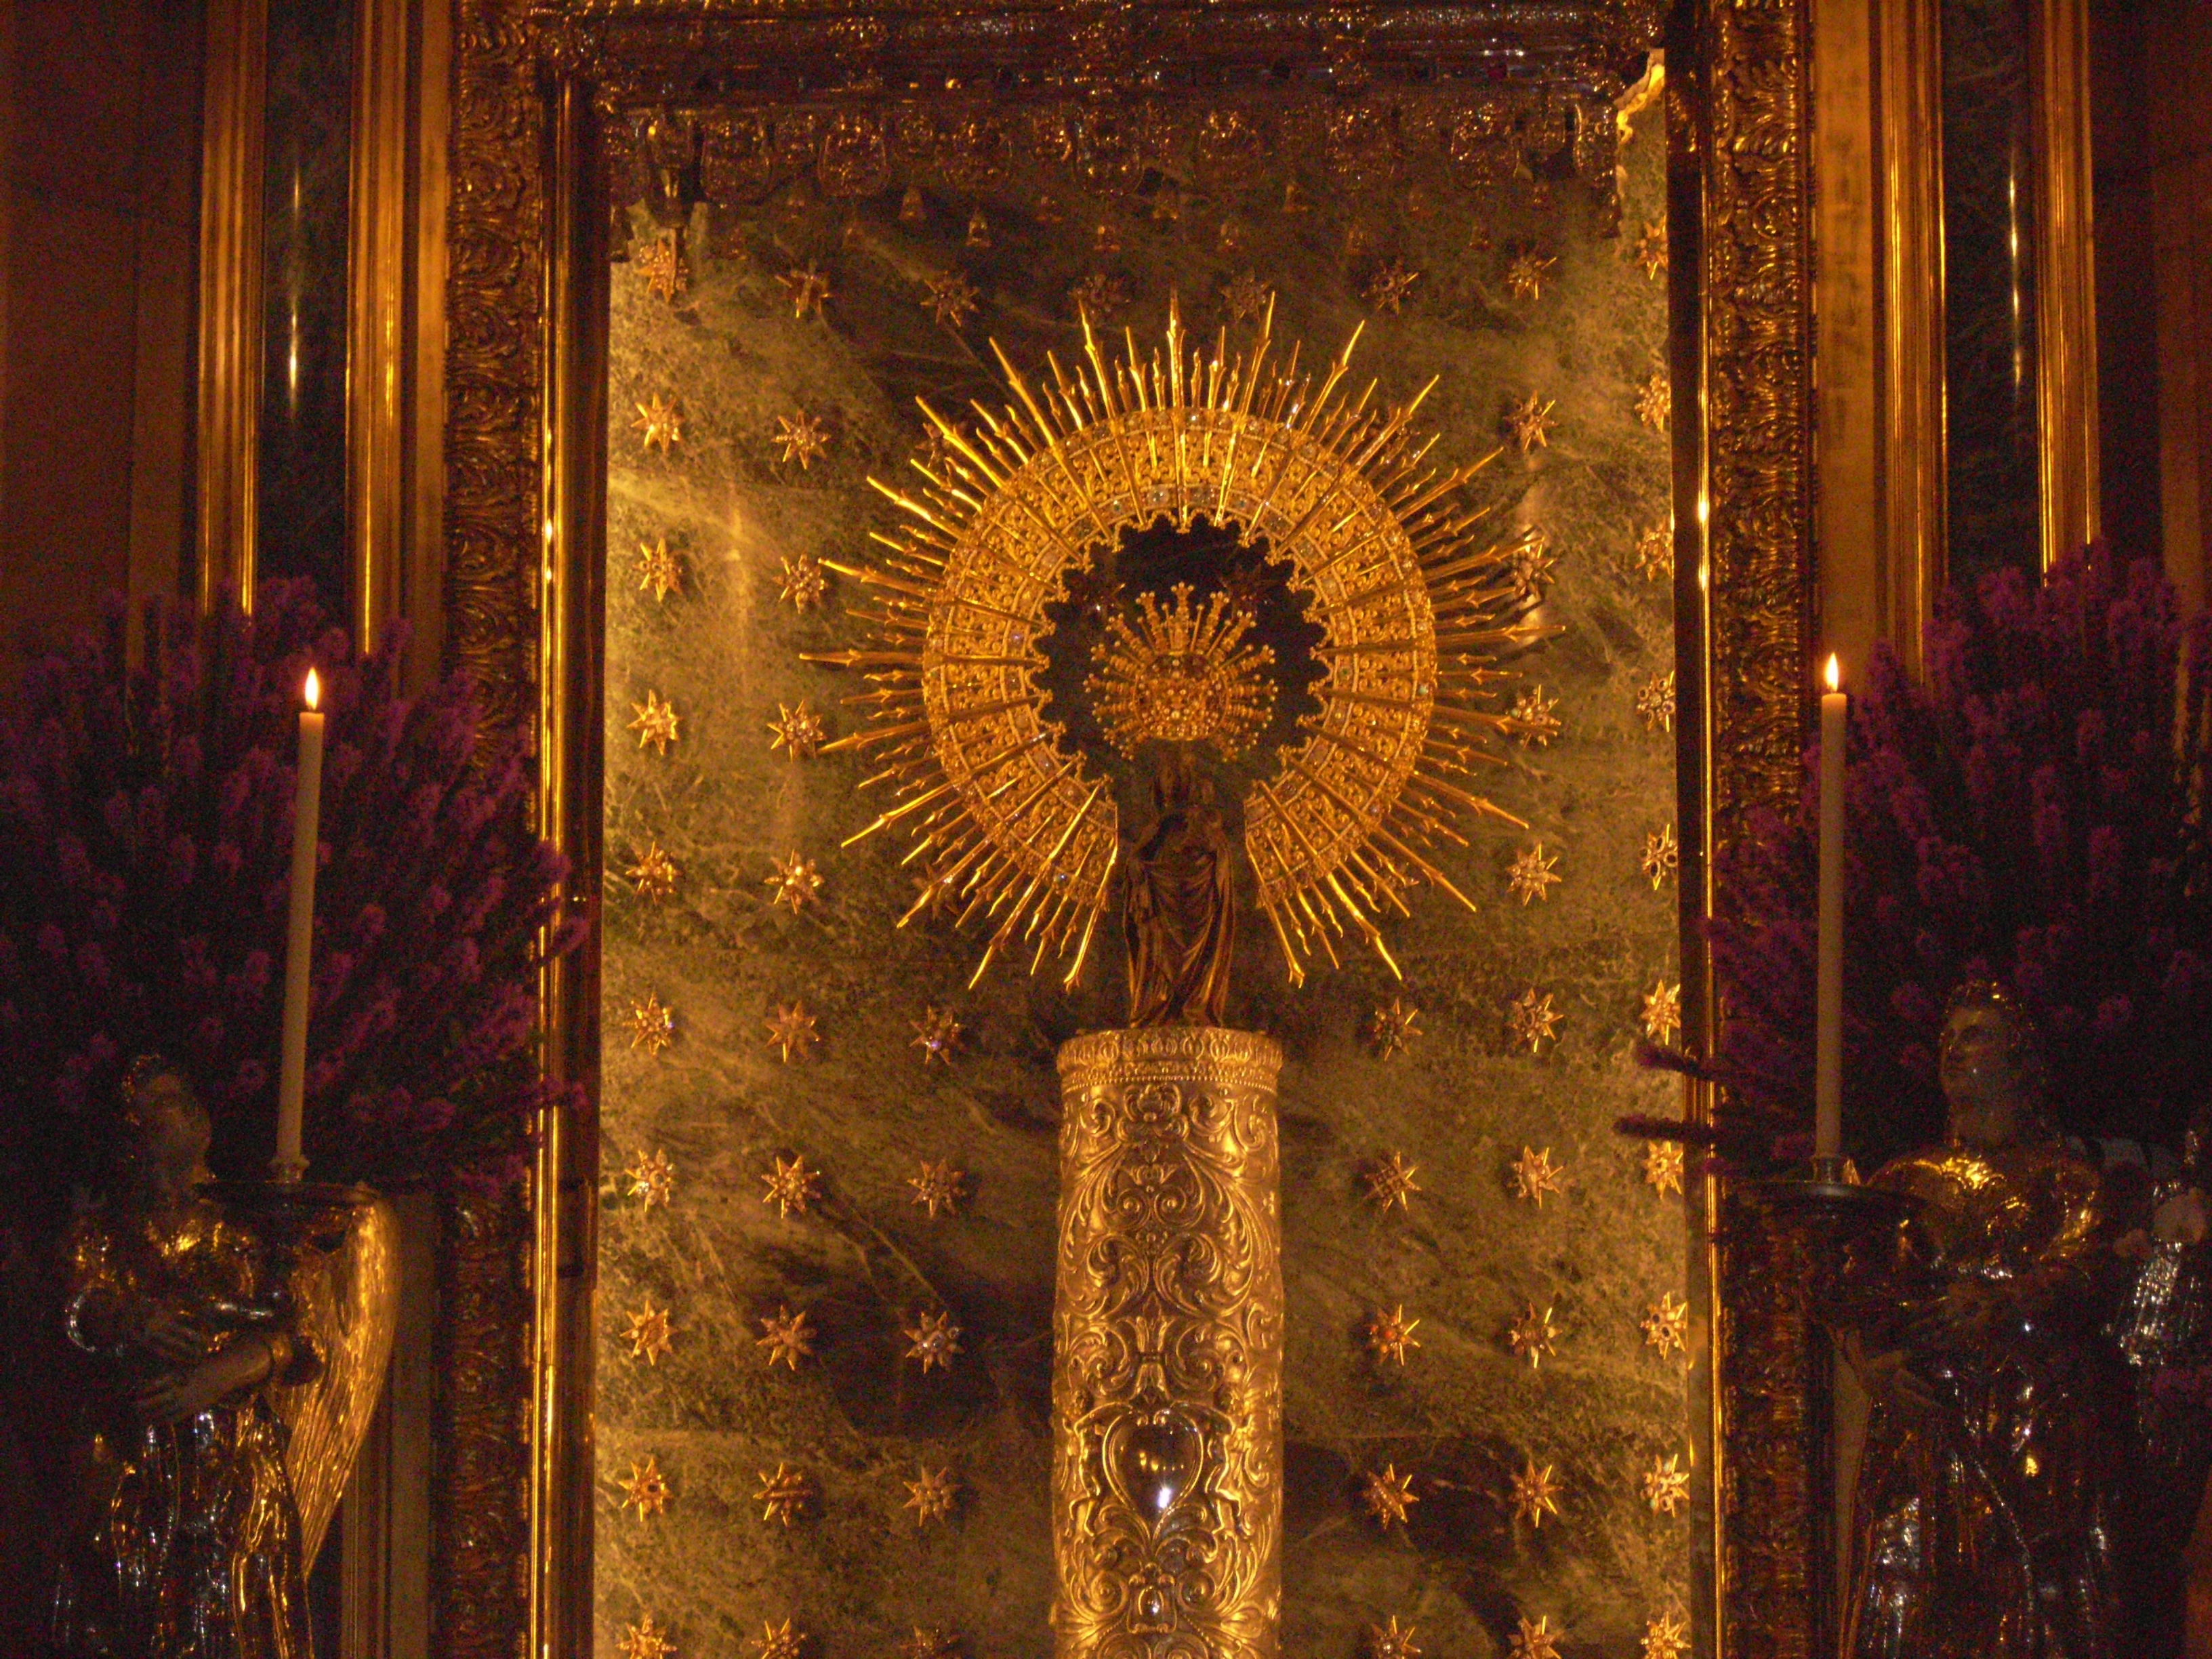 Virgen del Pilar - Wikipedia, la enciclopedia libre